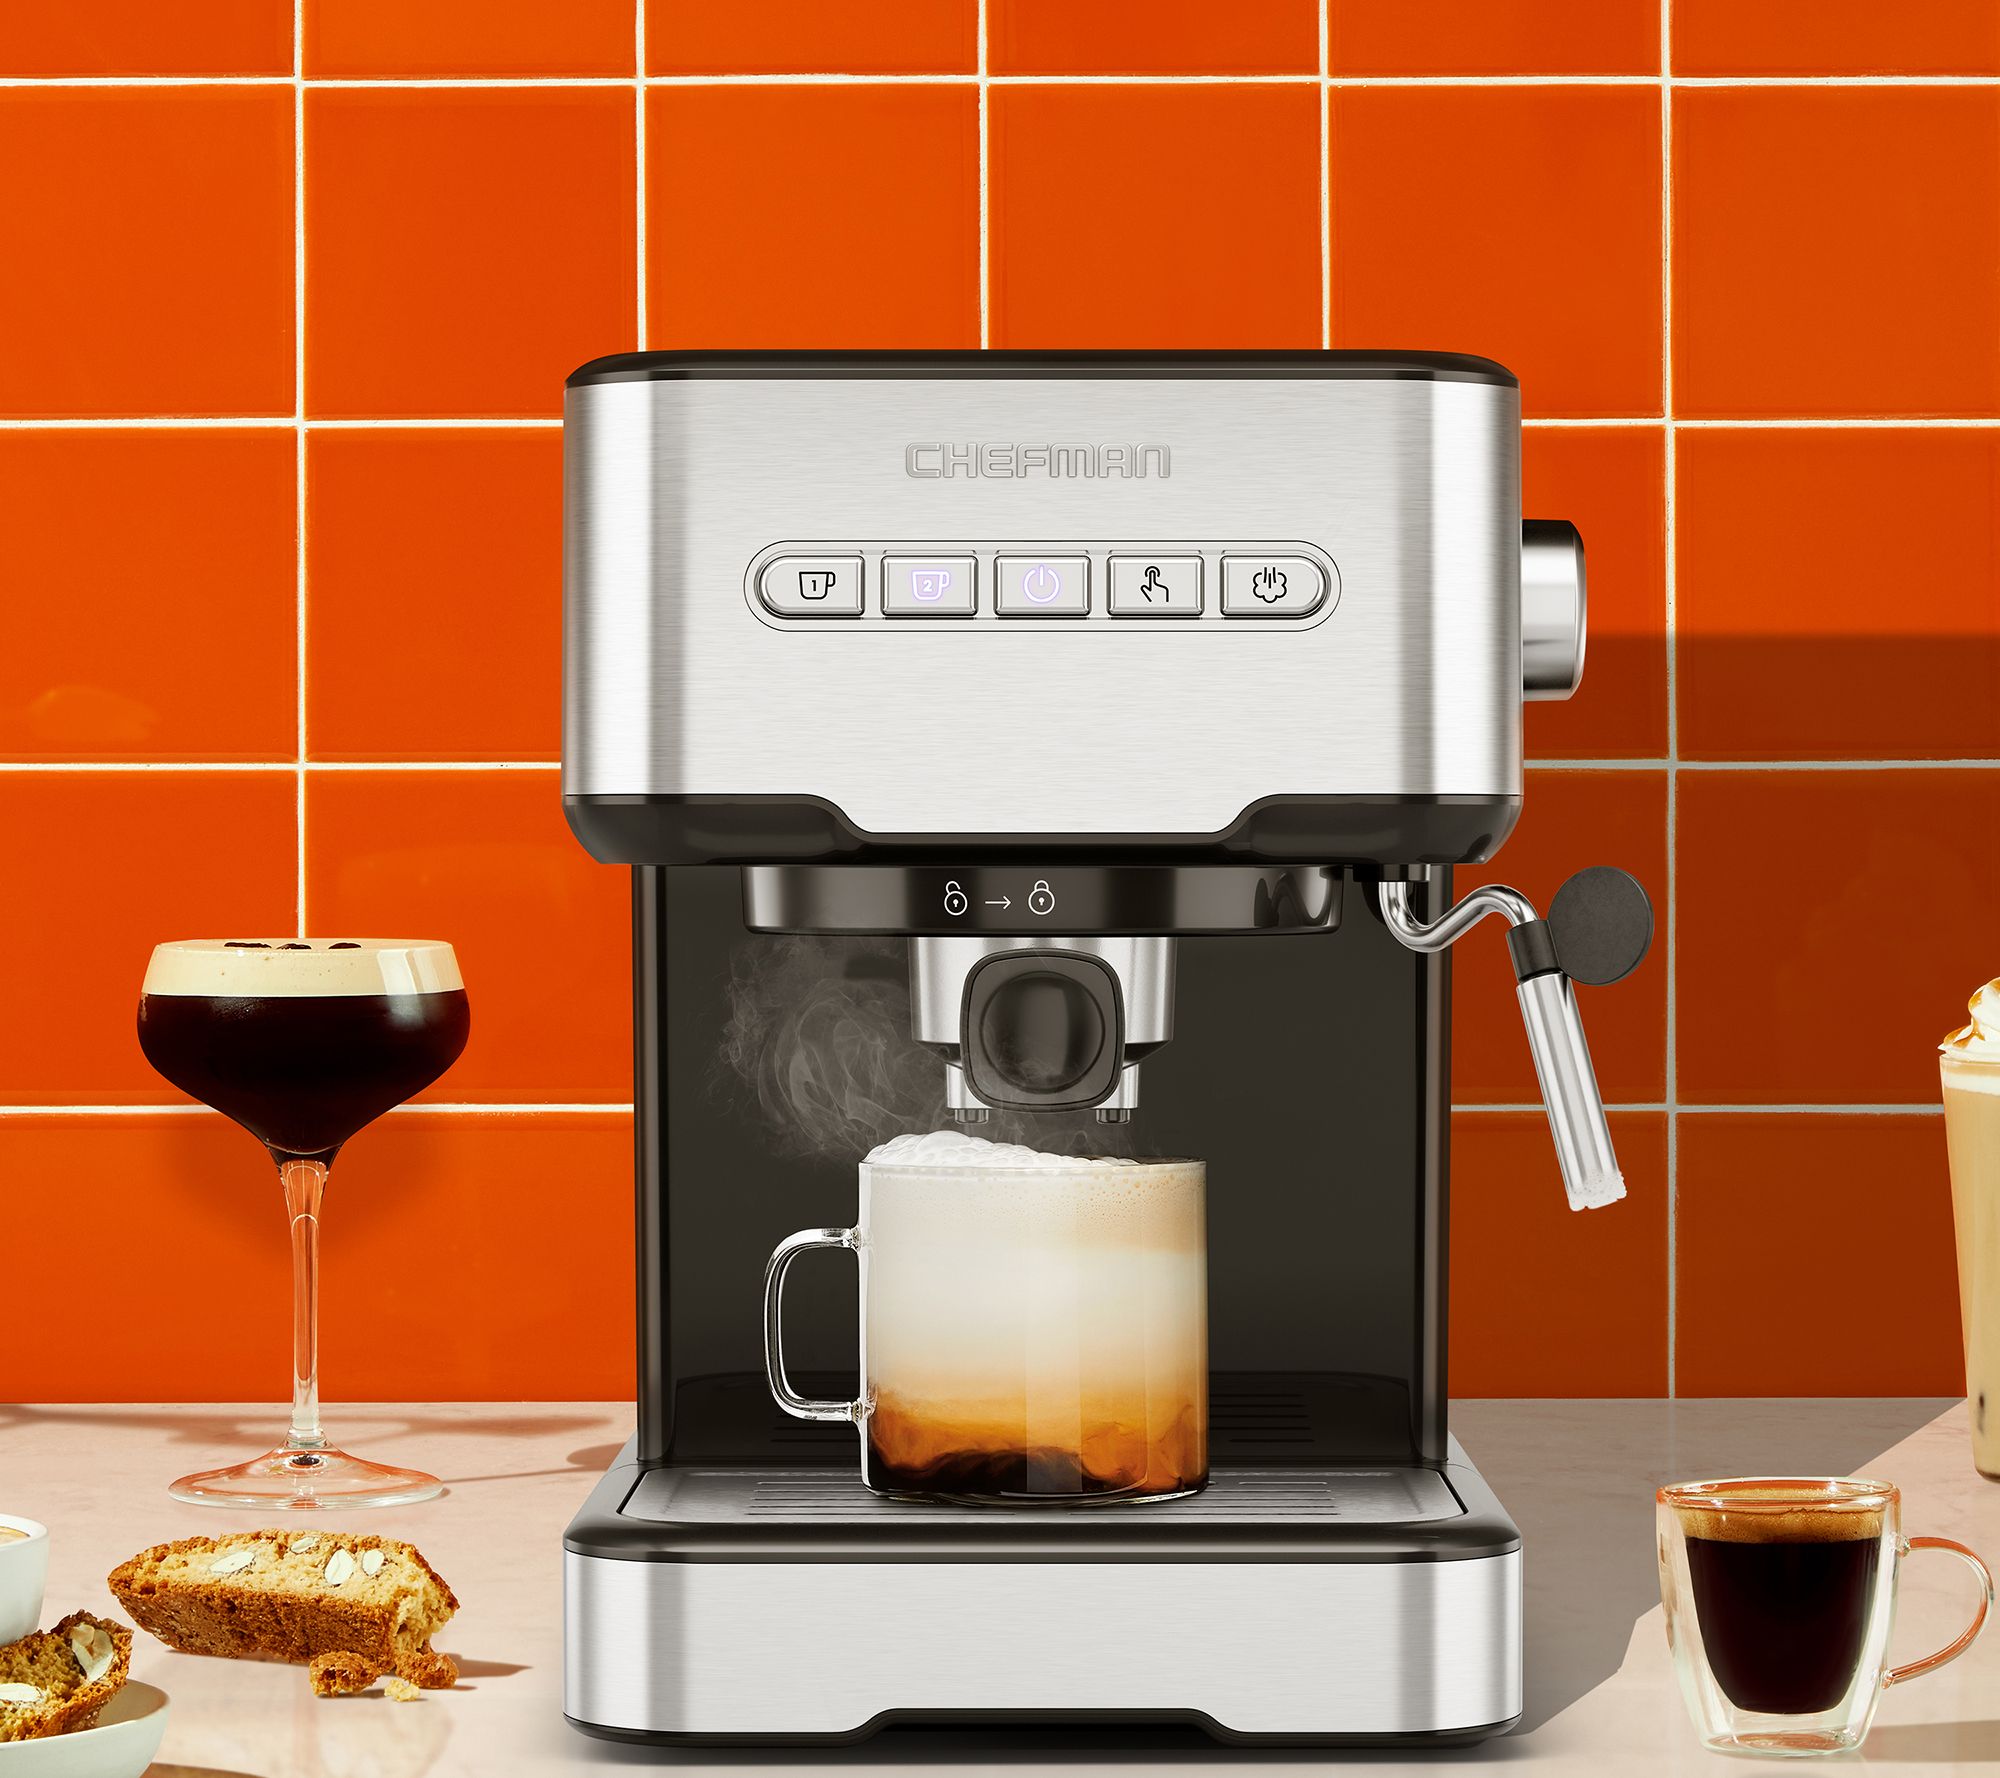 Chefman 4-in-1 Espresso Machine with Steamer & Milk Frother, 1.5 Liter,  Stainless Steel 